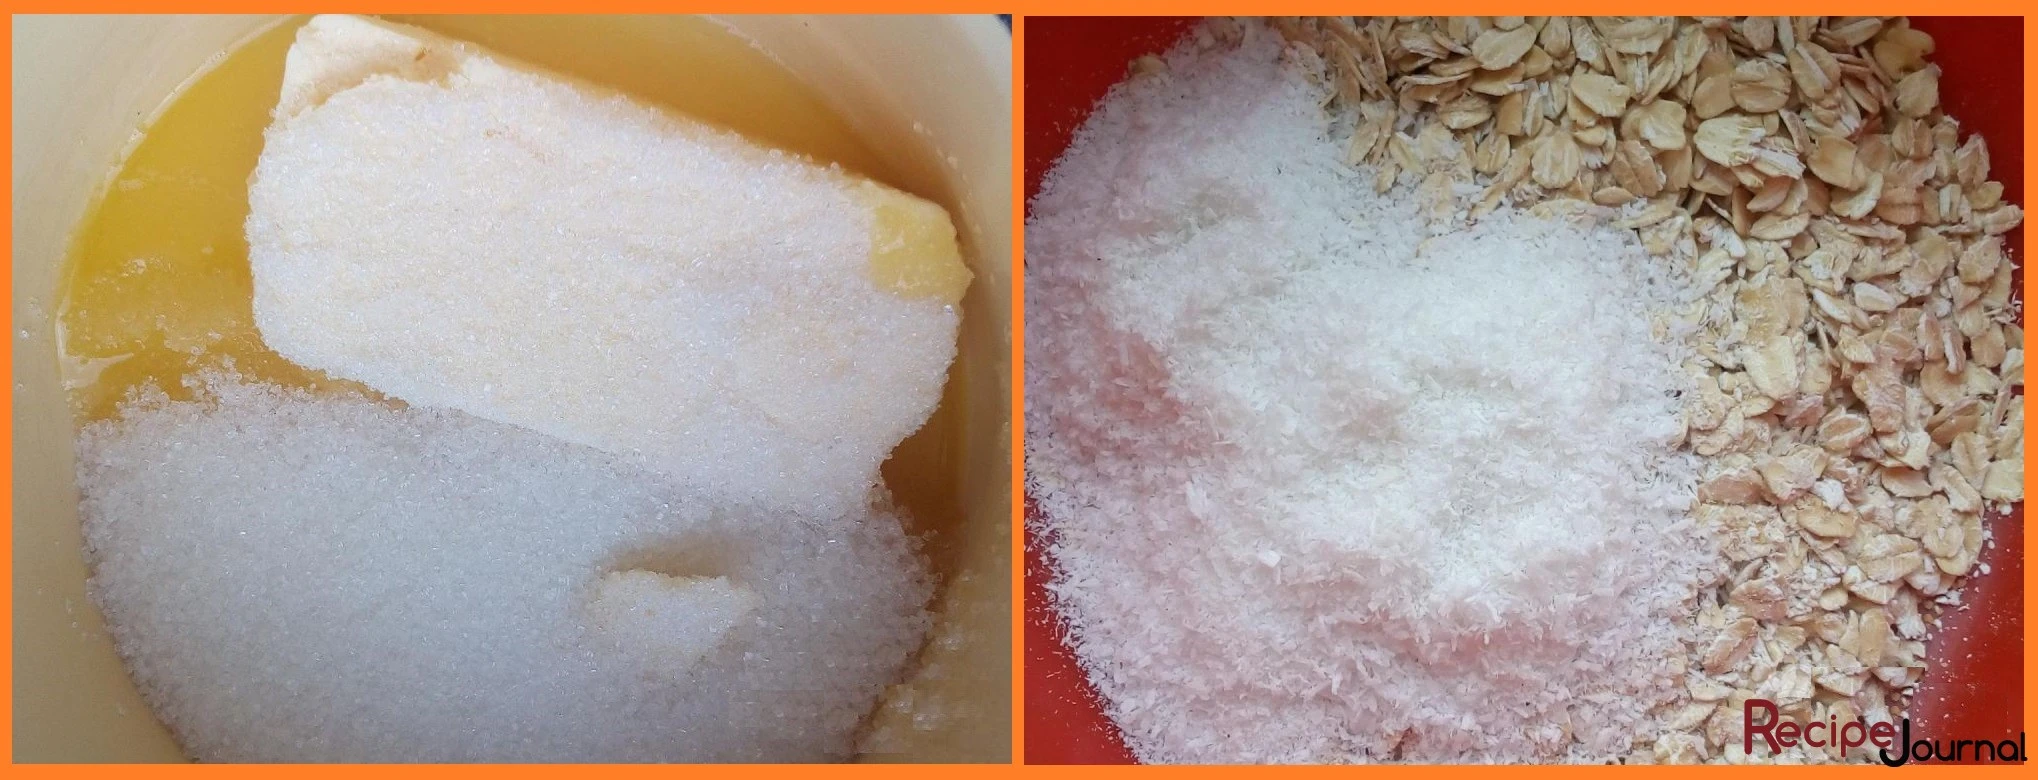 Размягченное сливочное масло растираем с сахаром и сахарной пудрой (пару ложек оставляем для посыпки). Овсяные хлопья смешиваем с кокосовой стружкой.